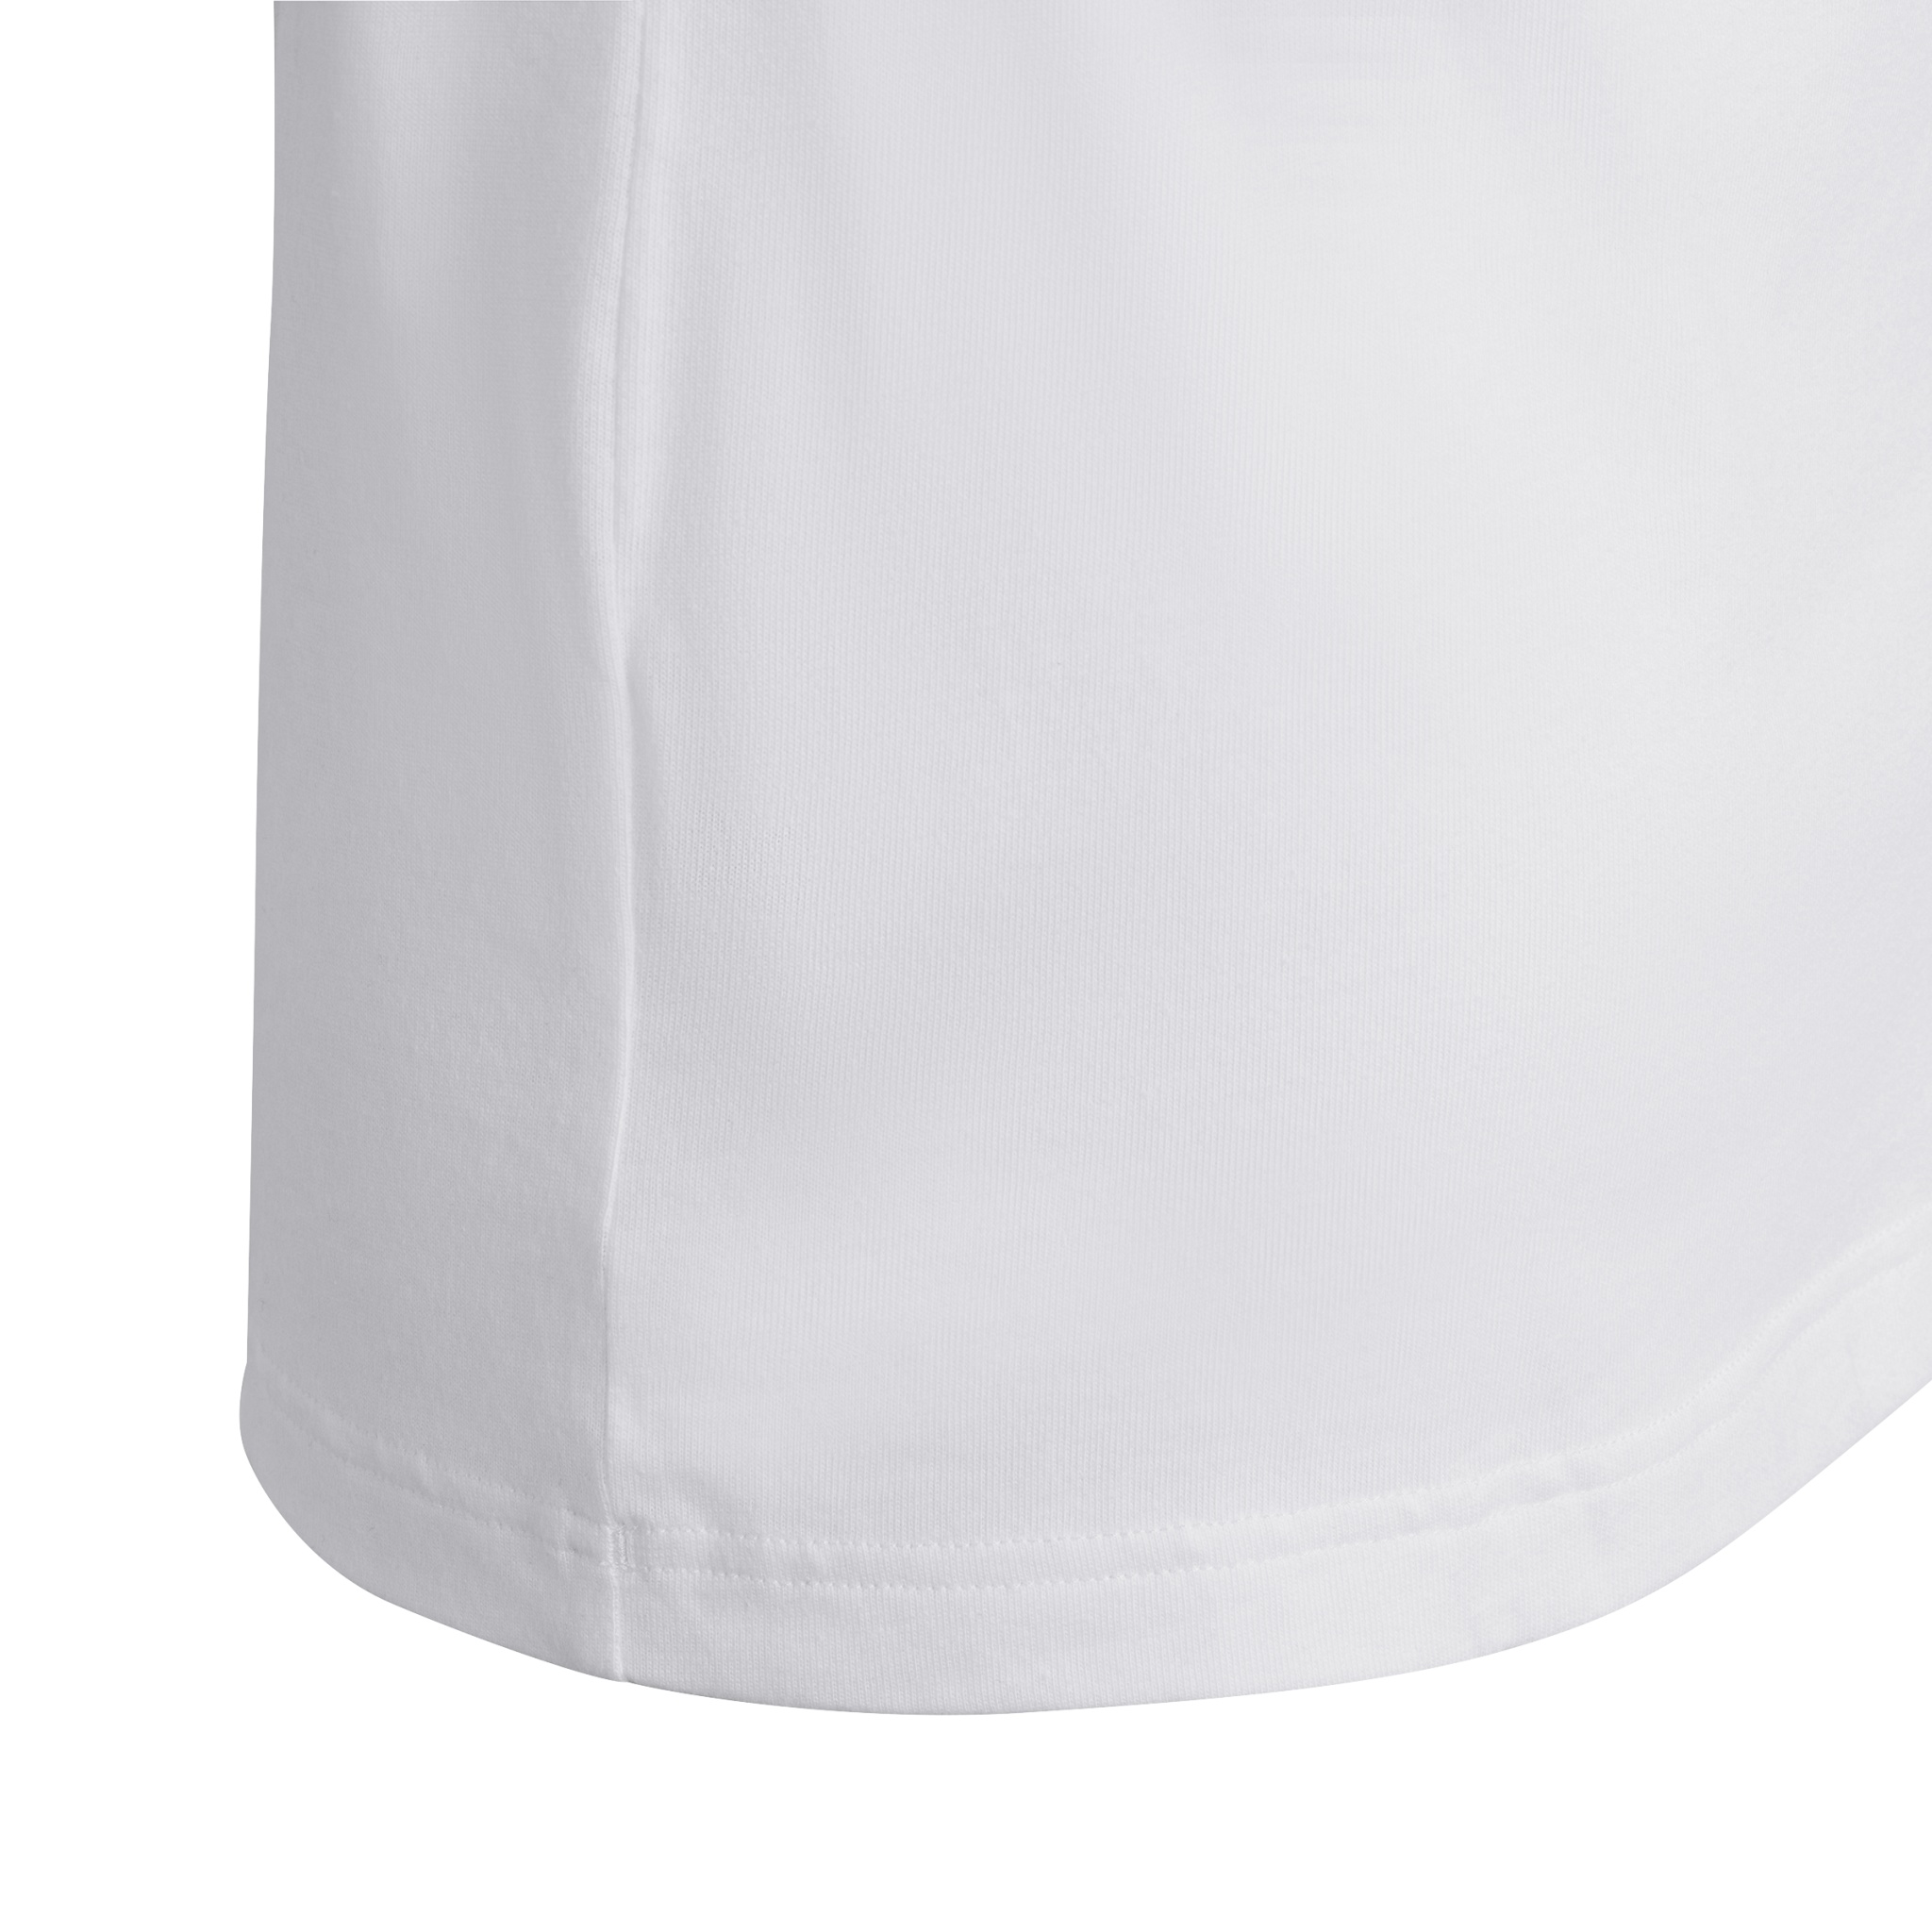 ADIDAS Future Icons 3-Streifen T-Shirt 10712113